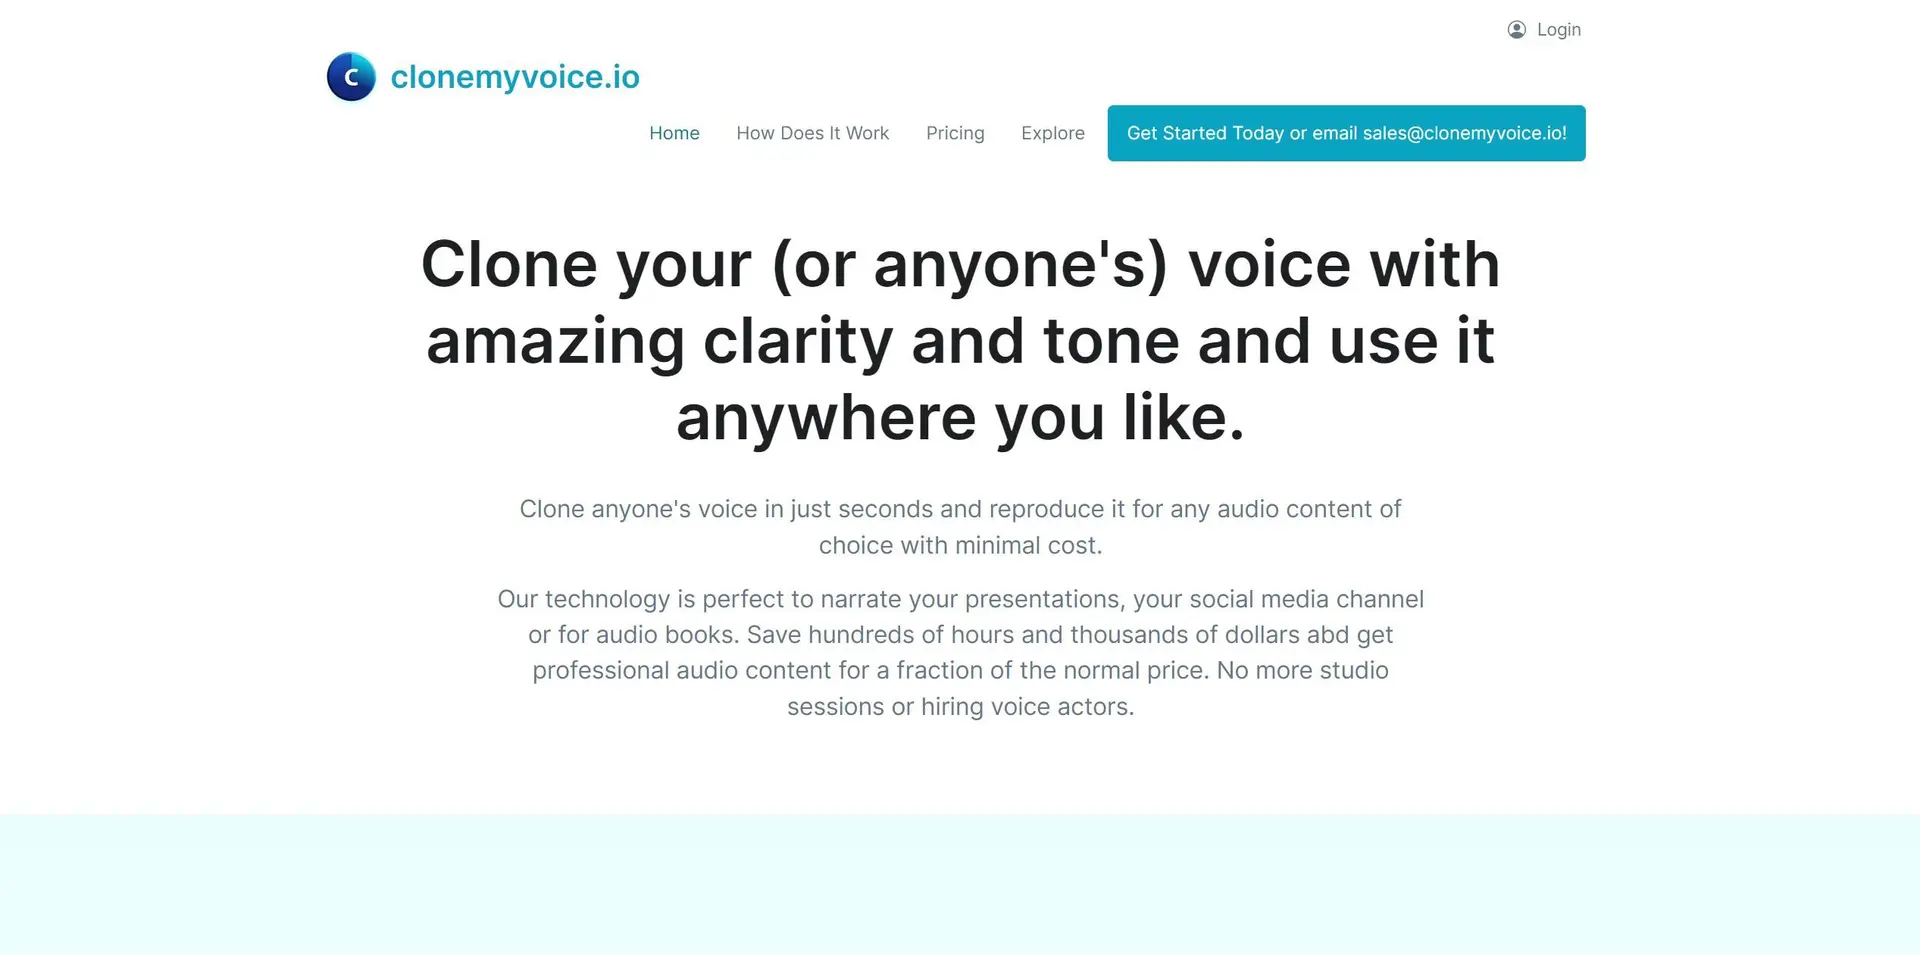 Clonemyvoice.iowebsite picture